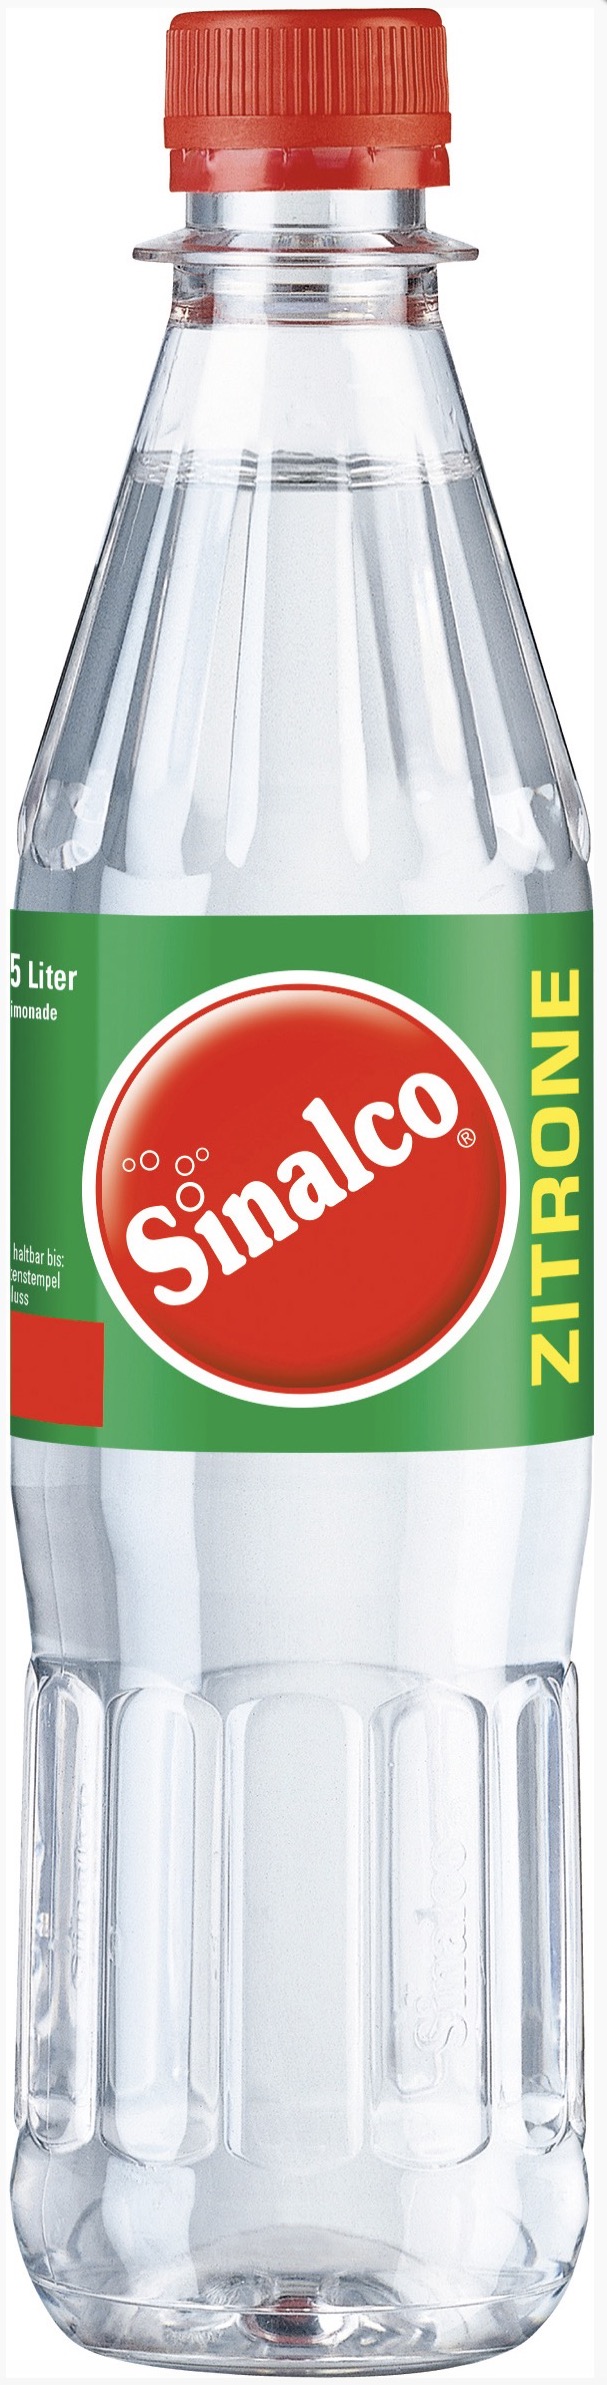 Sinalco Zitrone 0,5L MEHRWEG